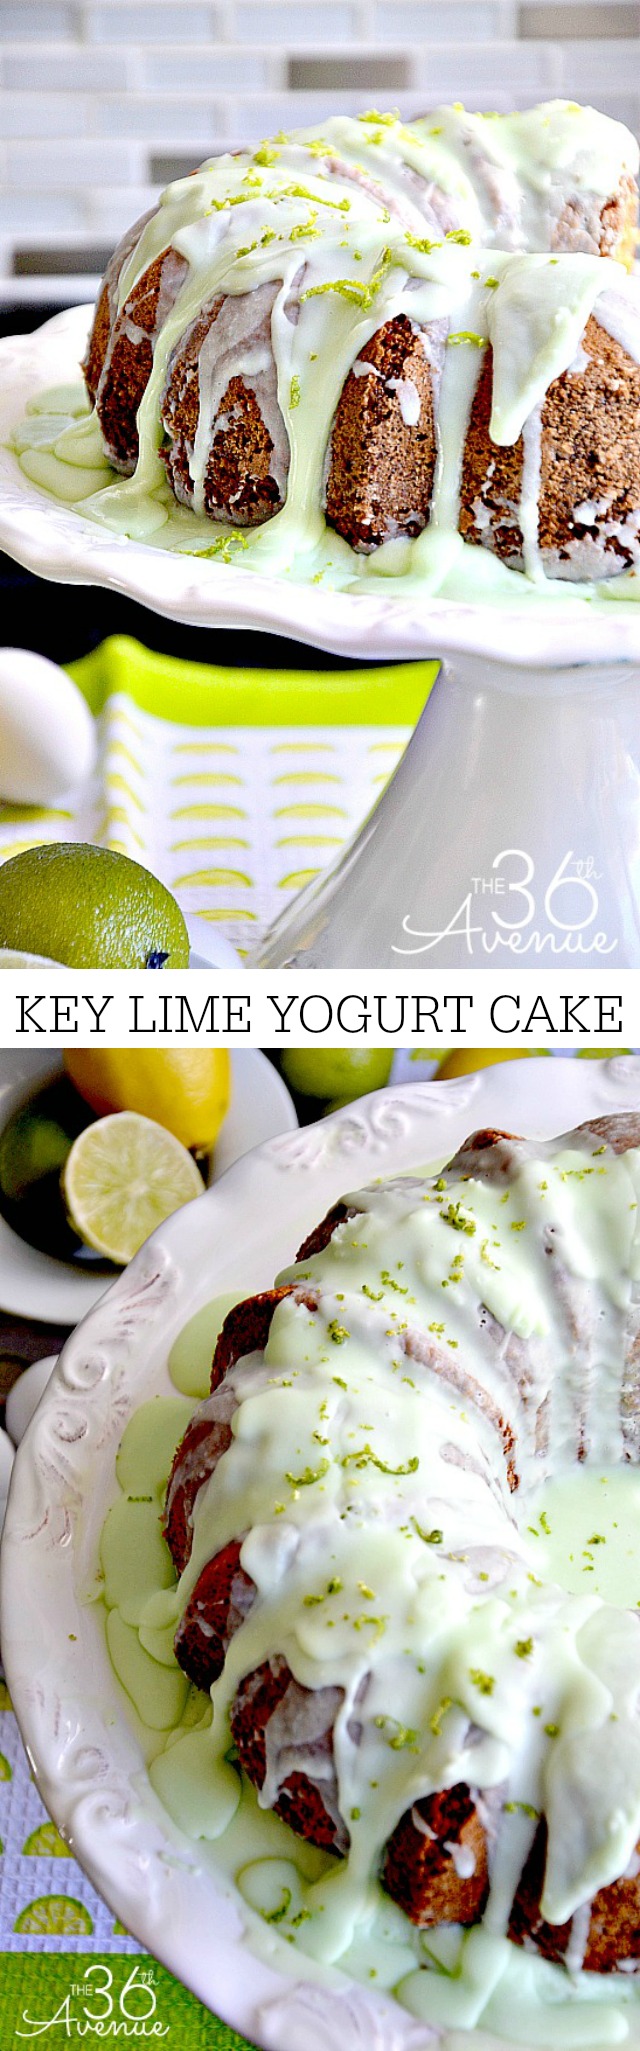 KEY LIME YOGURT CAKE the36thavenue.com